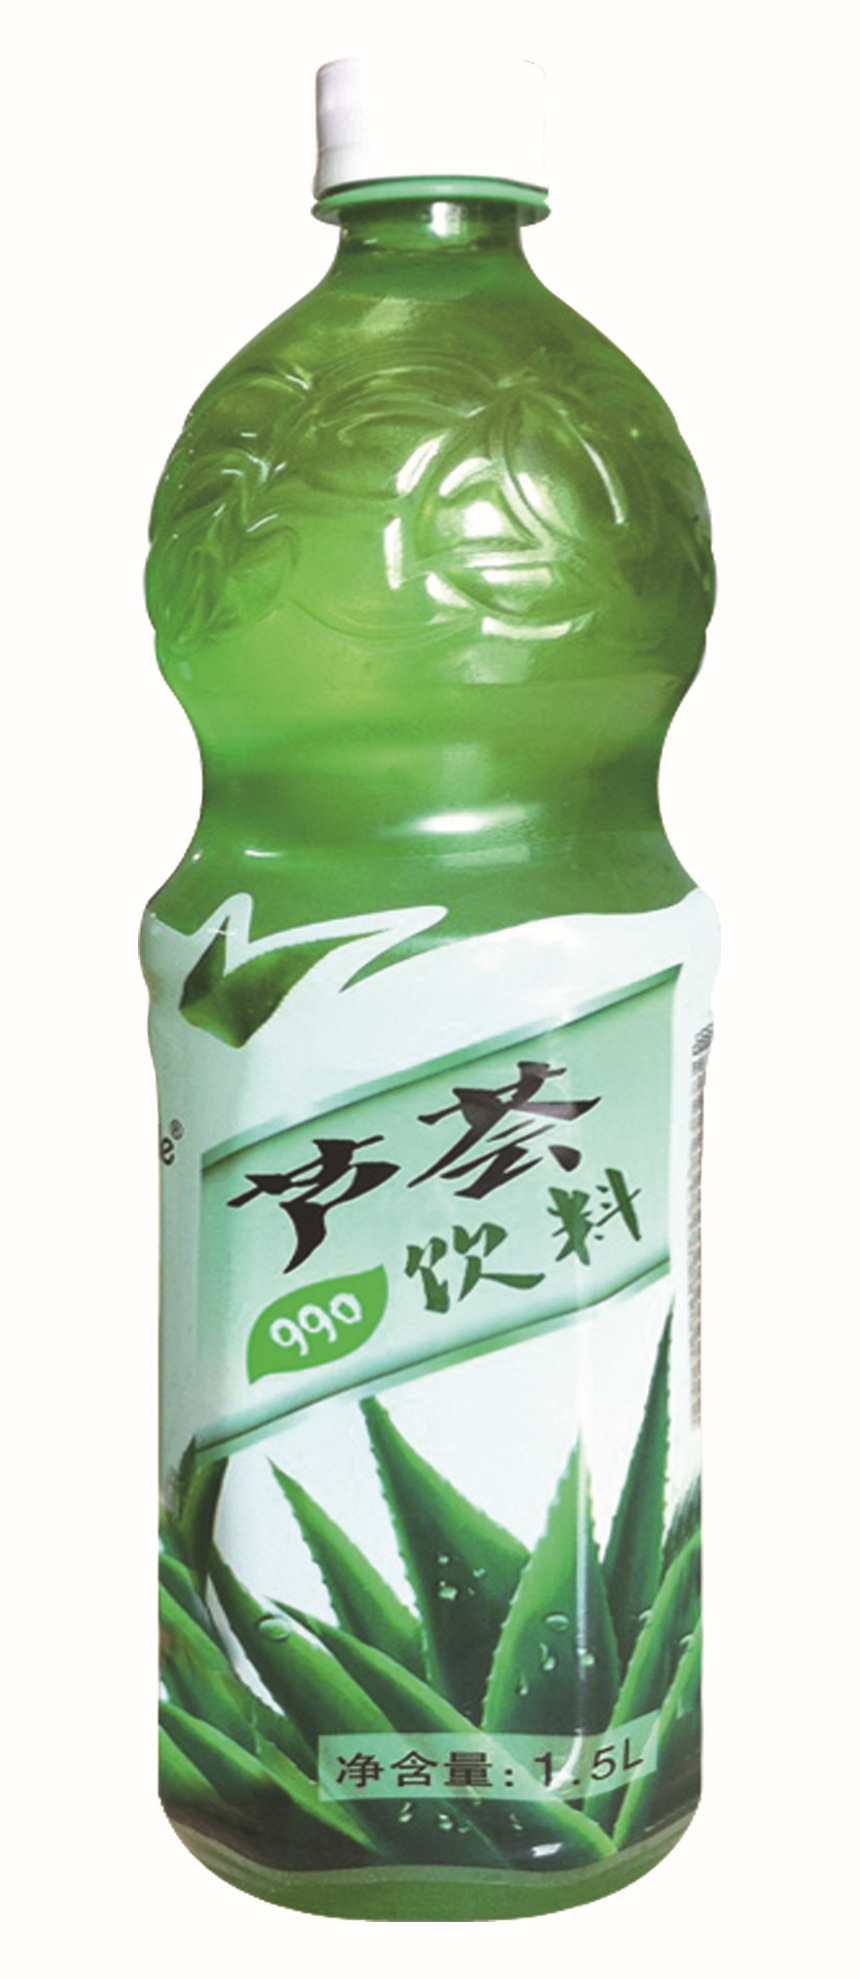 基本资料: 【名 称】韩国恩乐芦荟汁1